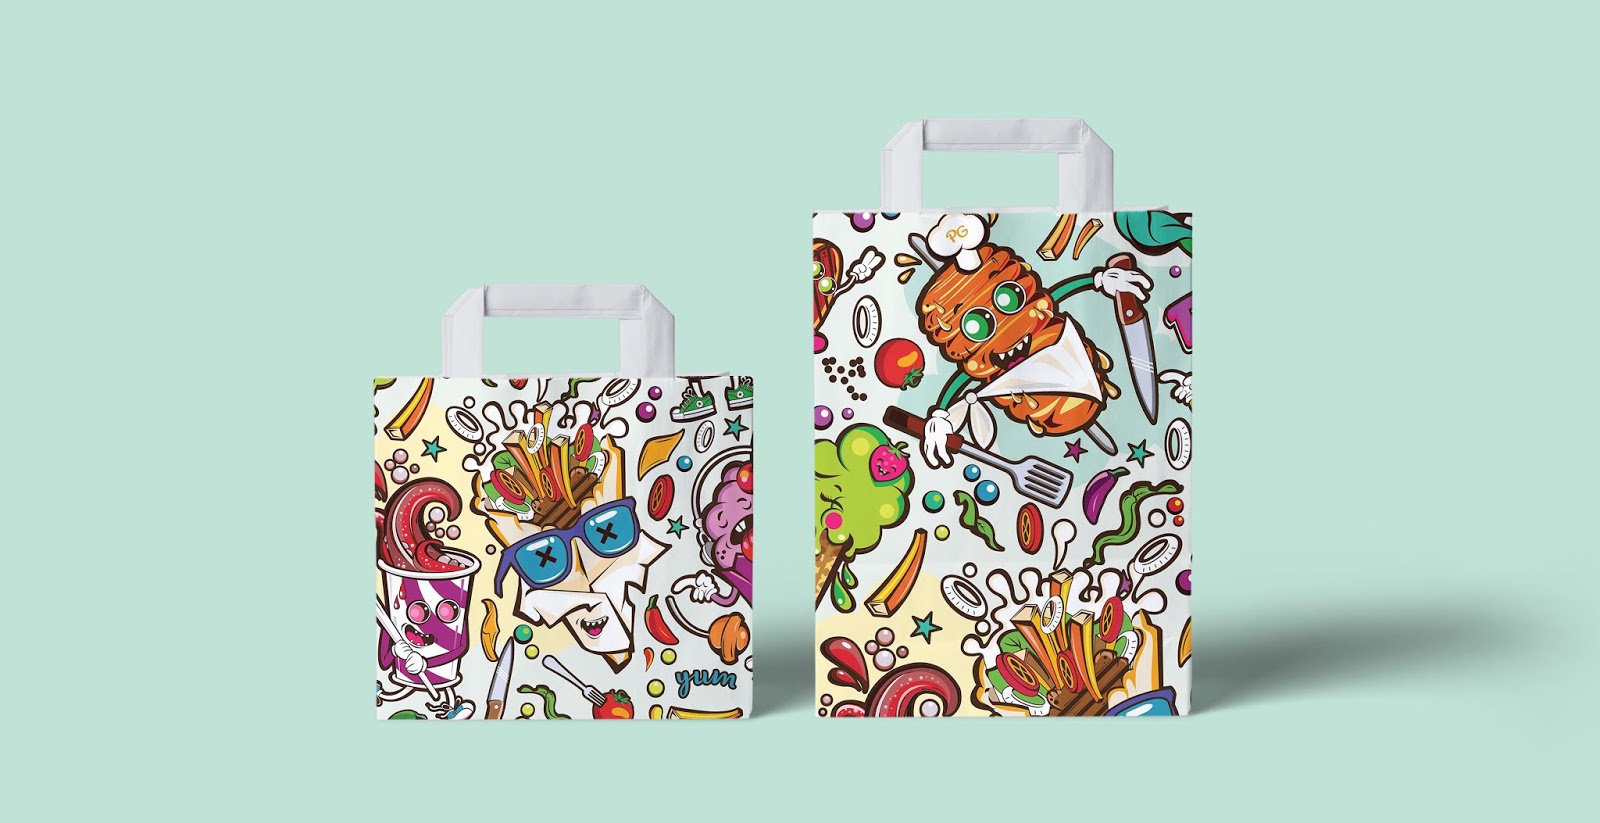 希娜美食餐厅品牌包装设计欣赏(图4)